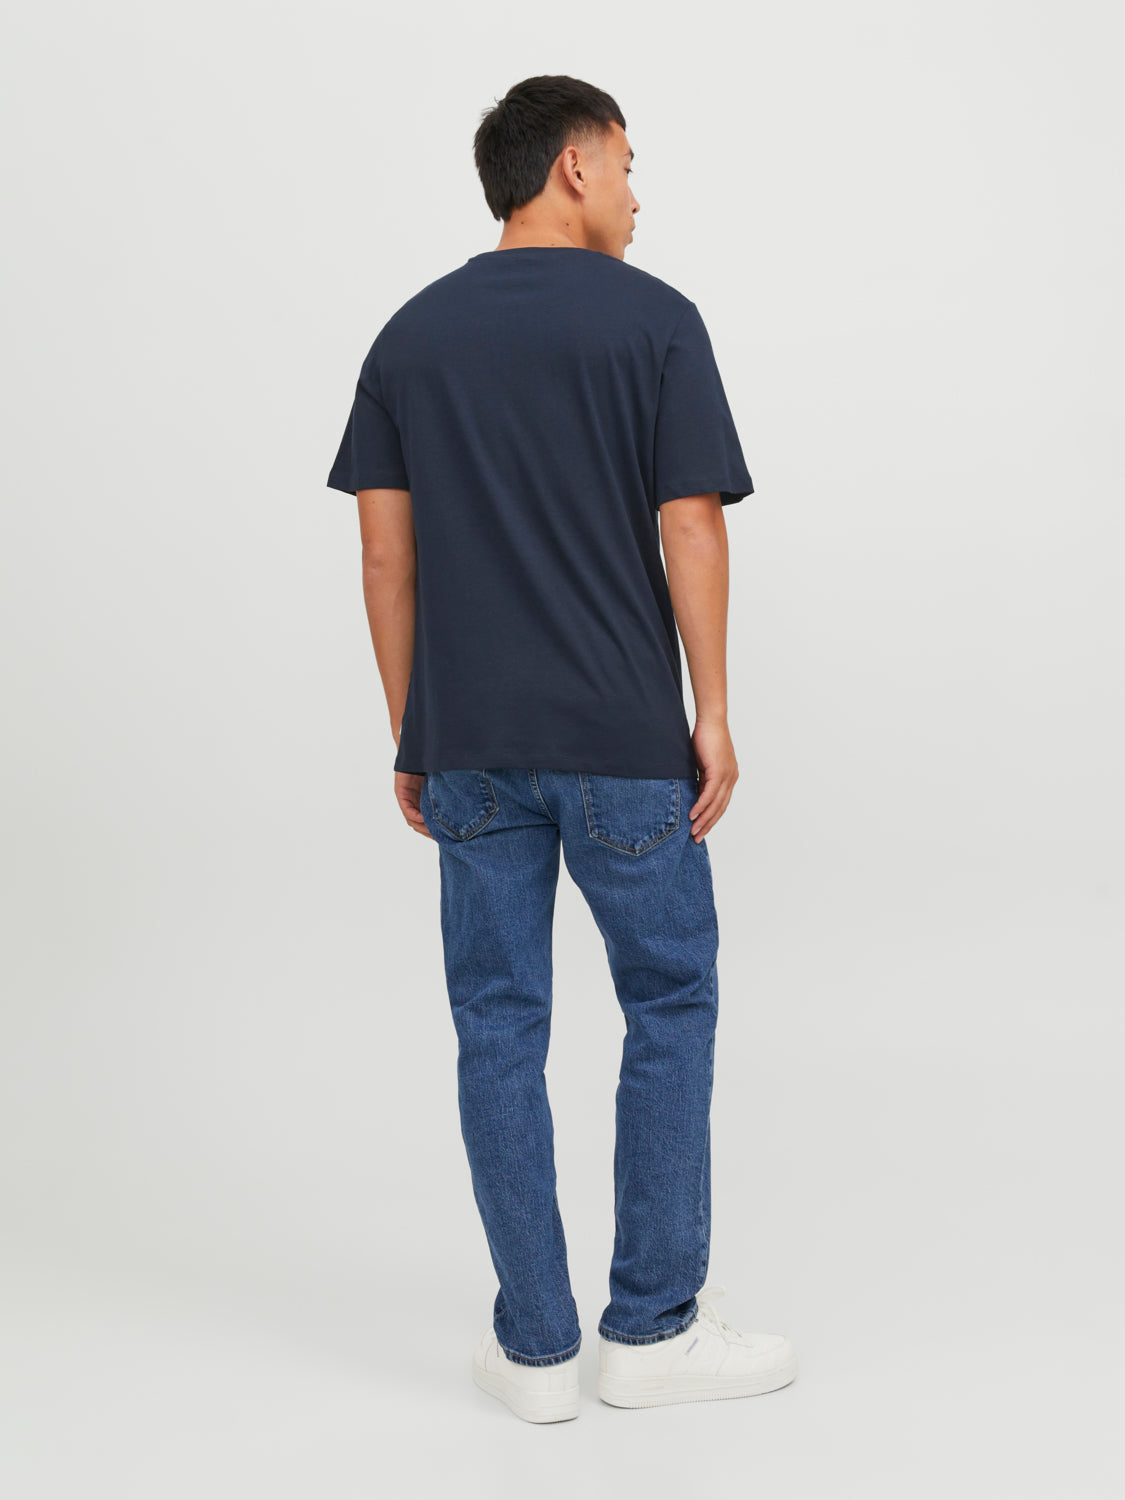 Camiseta básica manga corta azul marino - JJEORGANIC